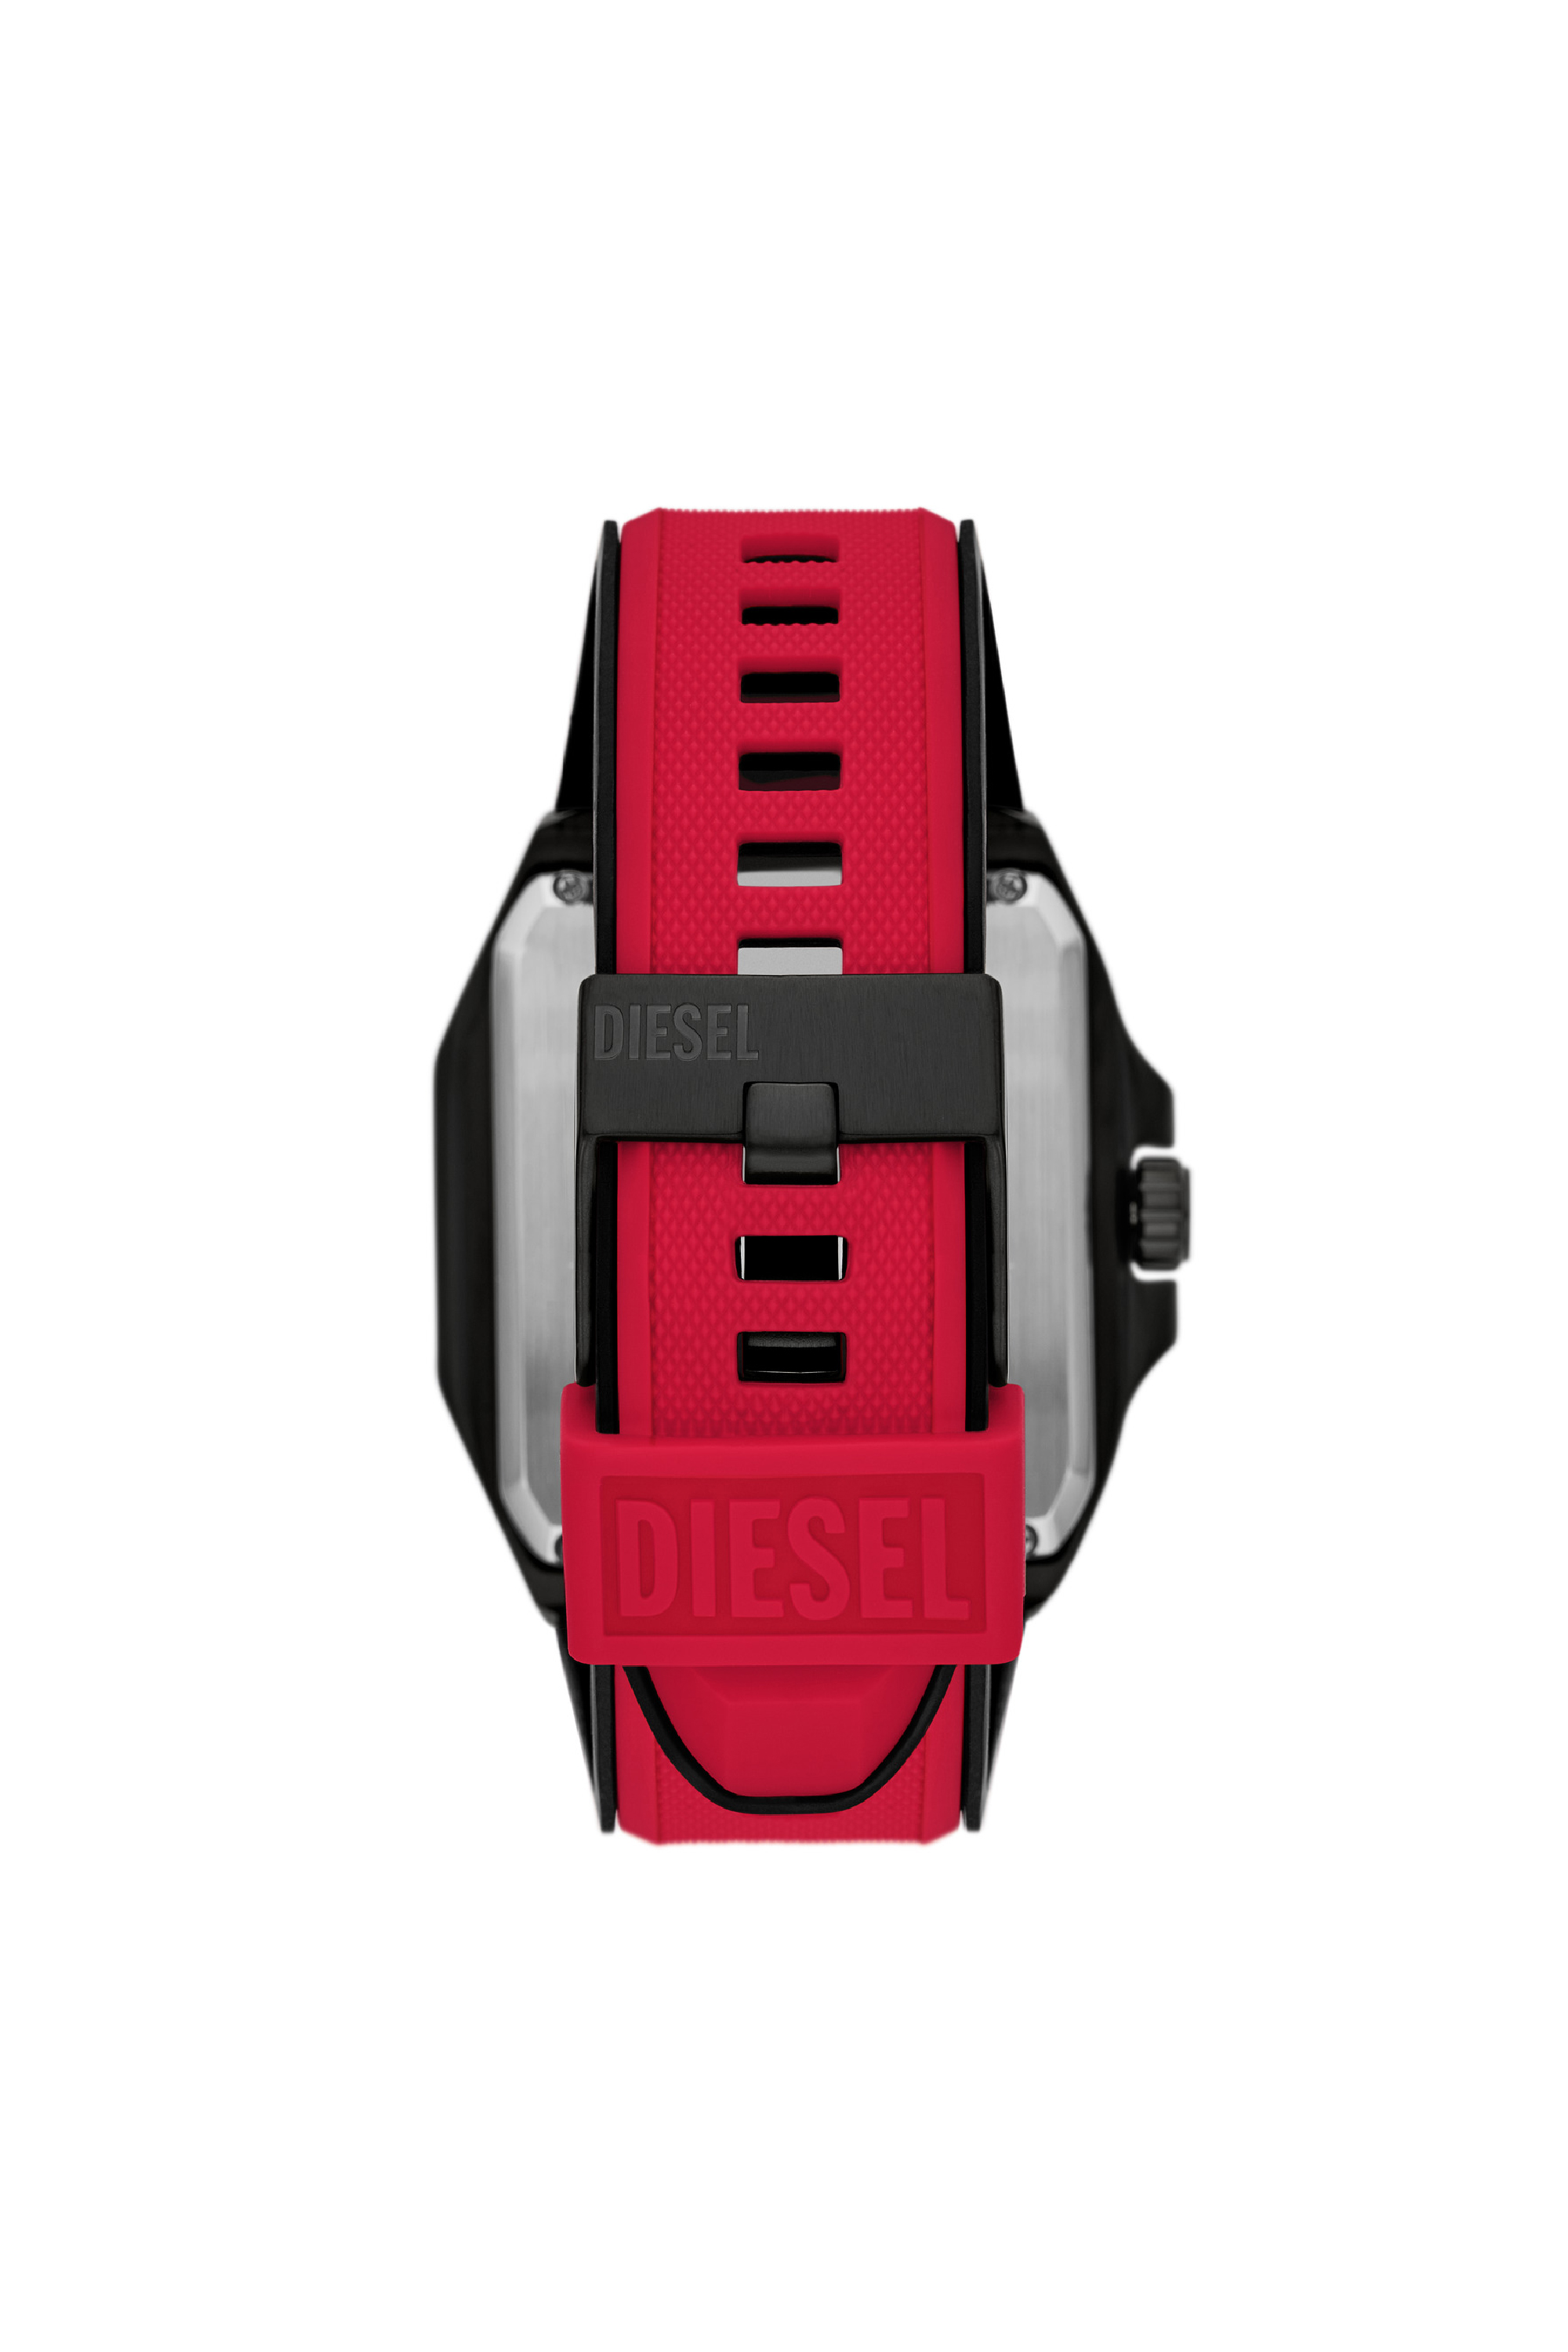 Diesel - DZ7469, Rosso - Image 2